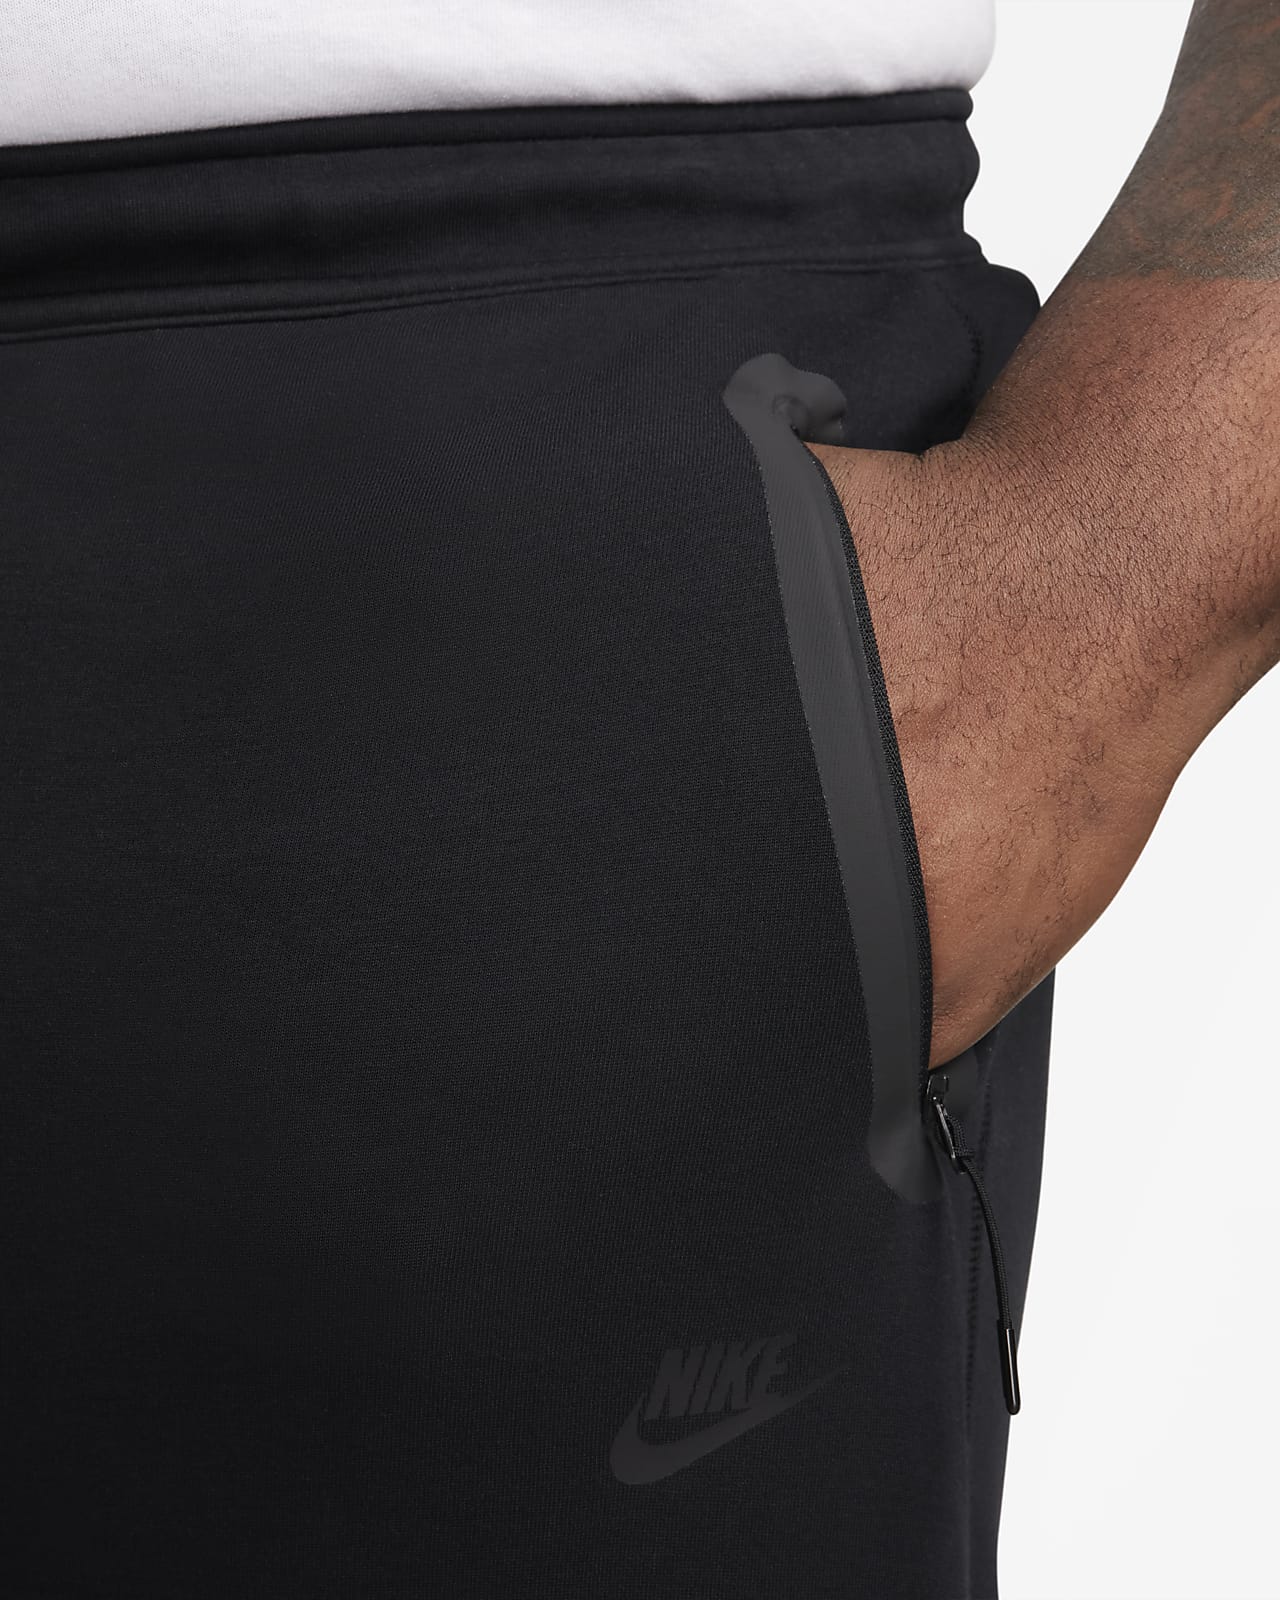  Nike Sportswear Men's Tech Fleece Joggers Pants (Grand